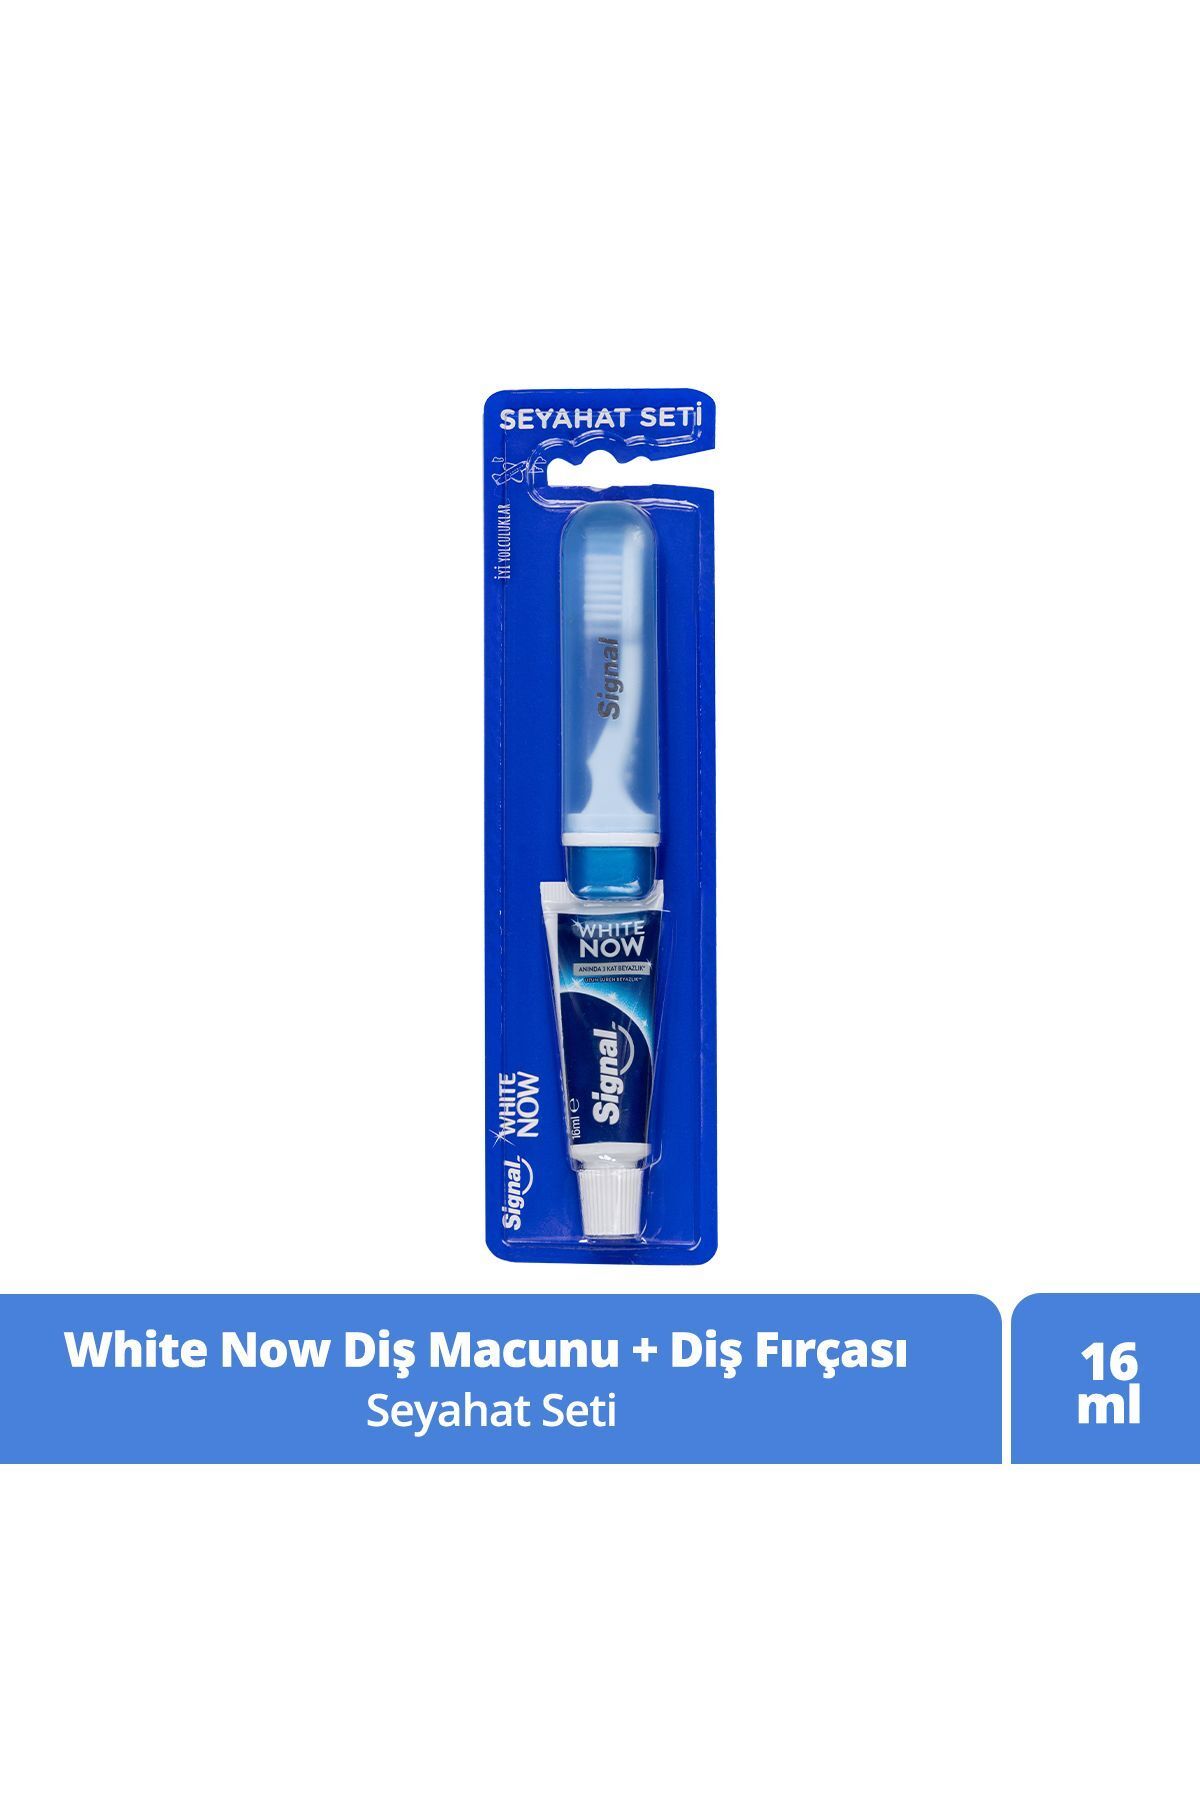 Signal White Now Seyahat Seti Diş Macunu 16 ml Diş Fırçası